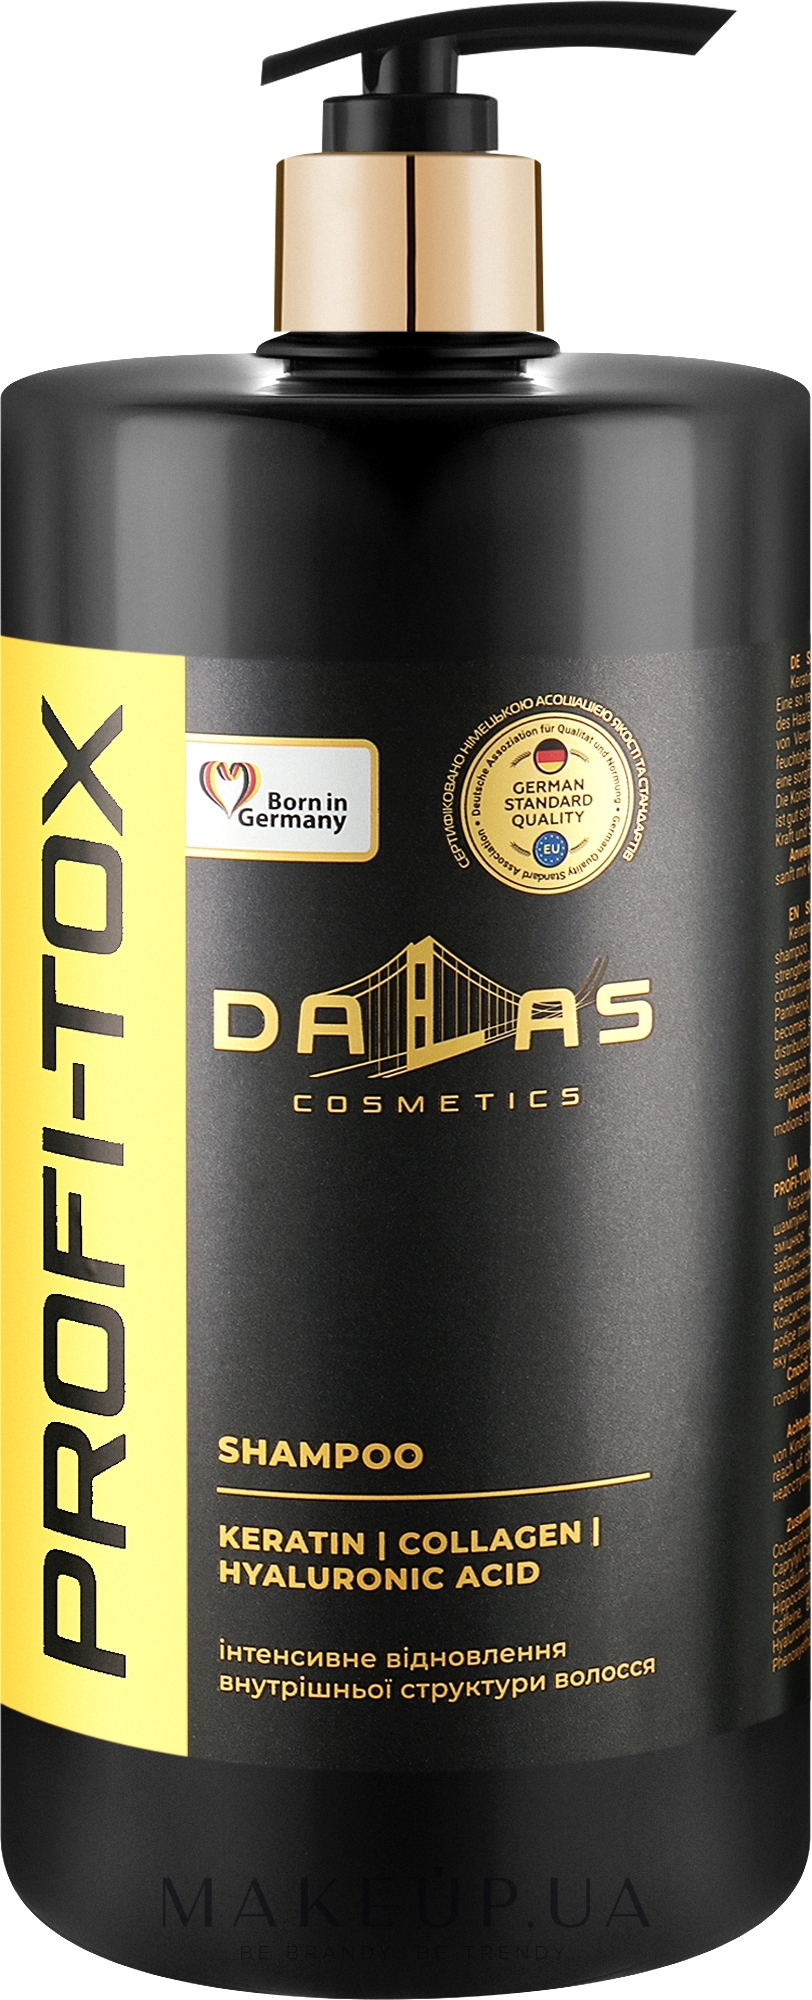 Шампунь с кератином, коллагеном и гиалуроновой кислотой - Dalas Cosmetics Profi-Tox Shampoo  — фото 1000ml